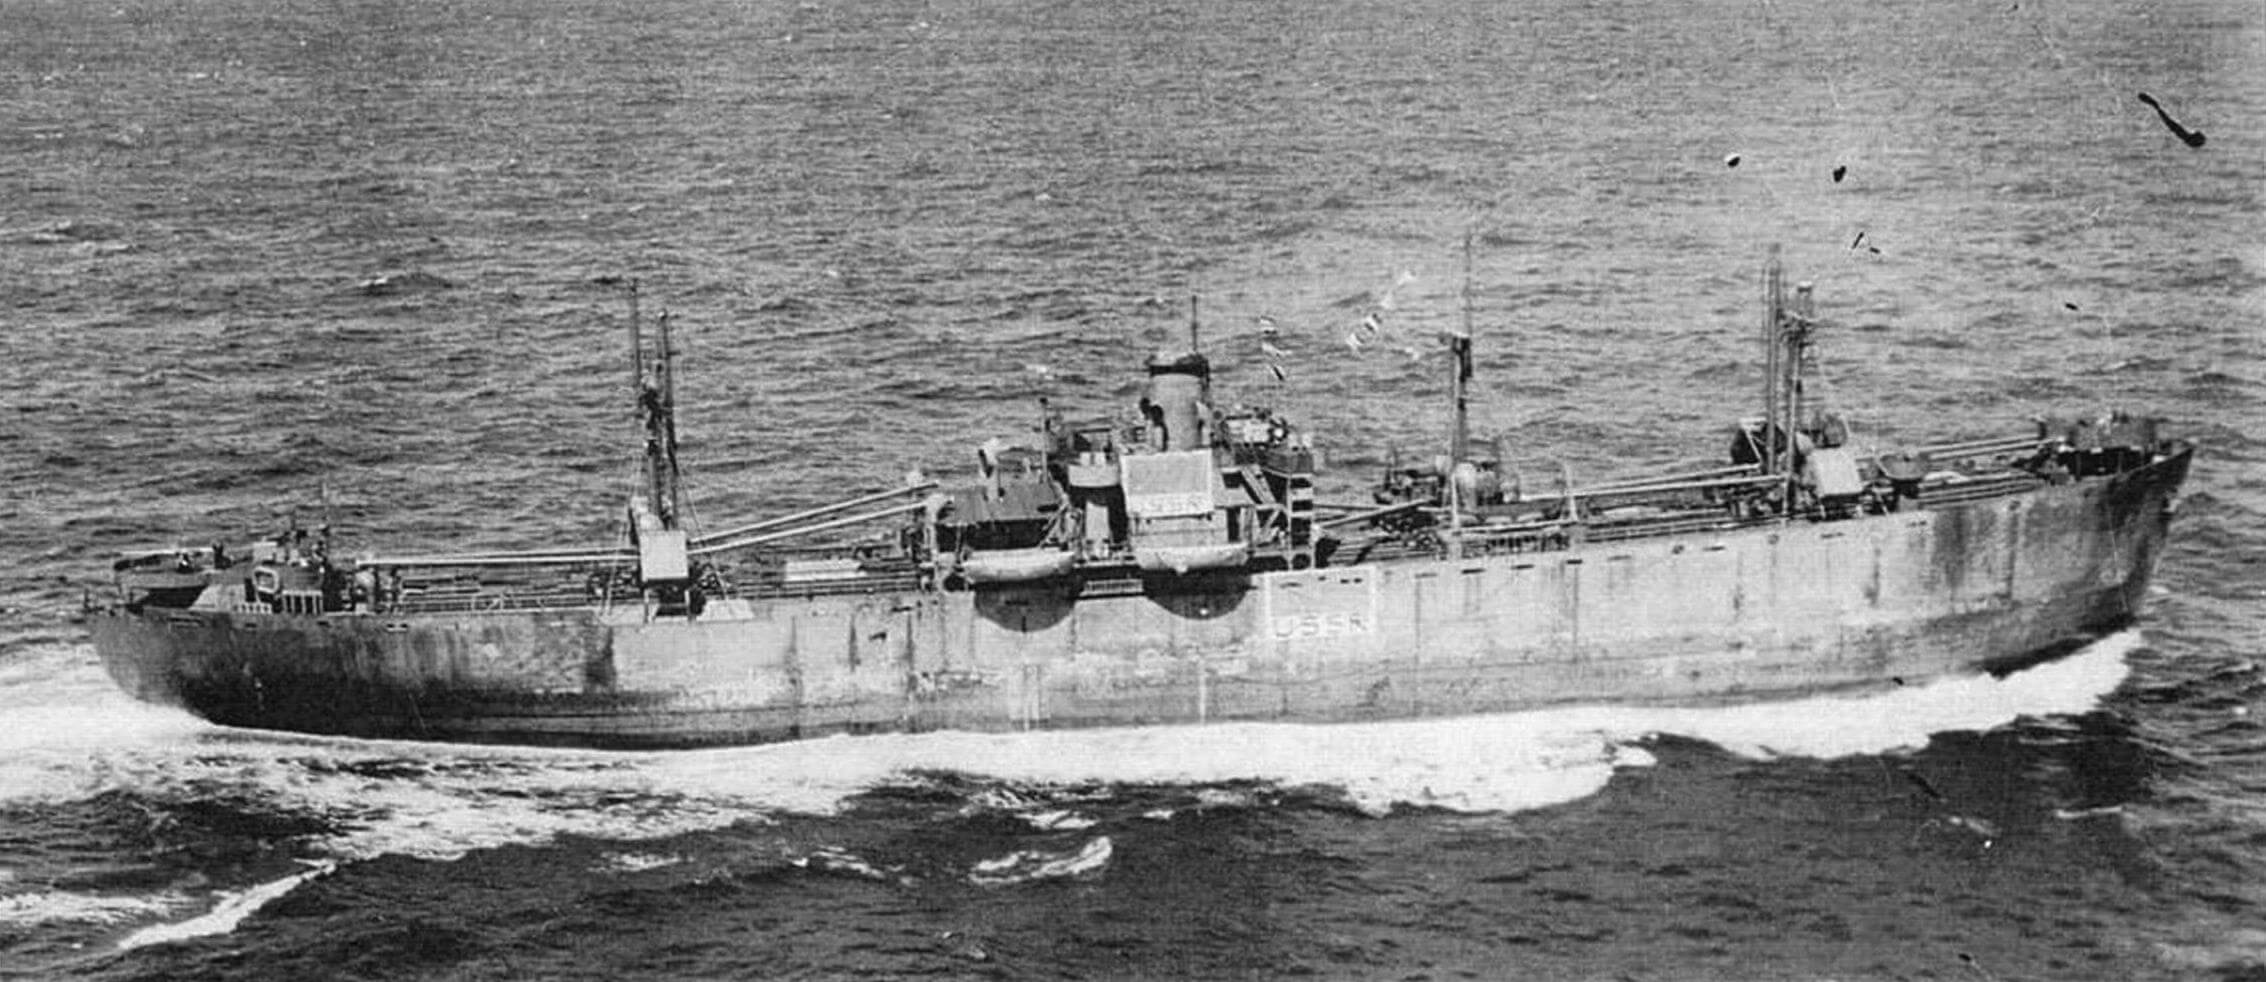 Пароход «Красногвардеец» - первое судно типа «Либерти», принятое советской закупочной комиссией в рамках поставок по ленд-лизу